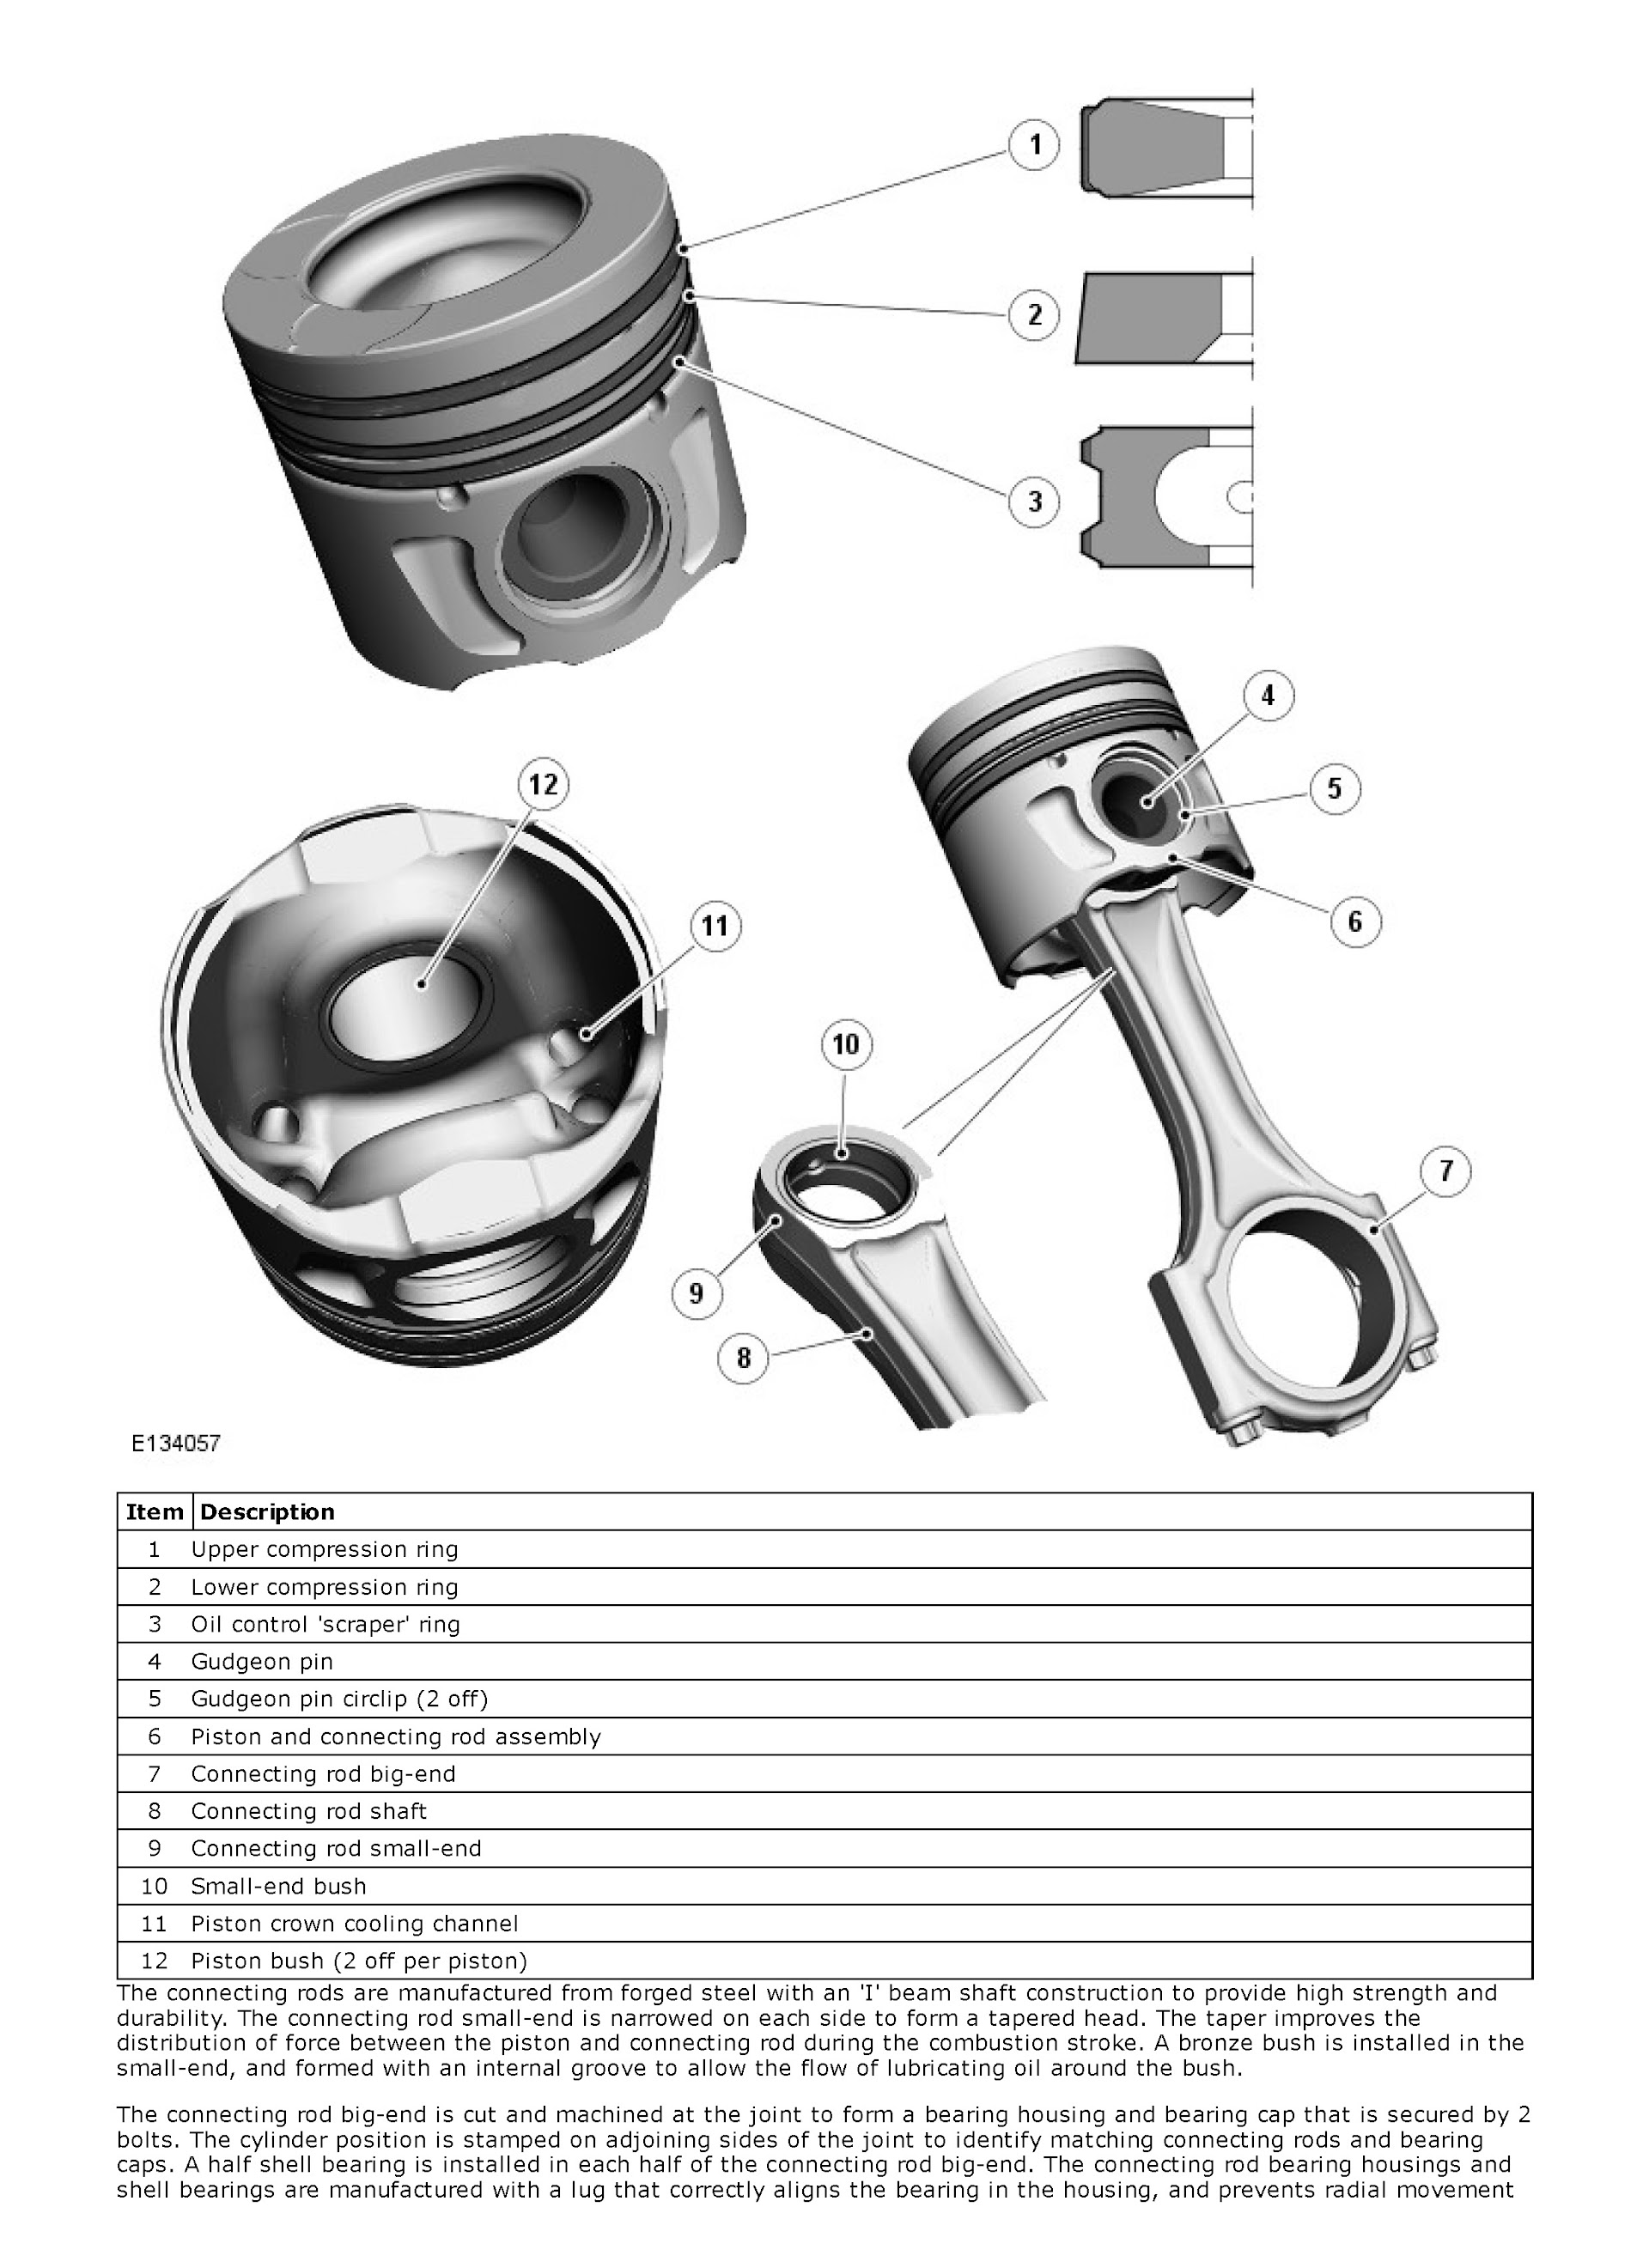 2014 Range Rover Evoque Repair Manual, Pistons